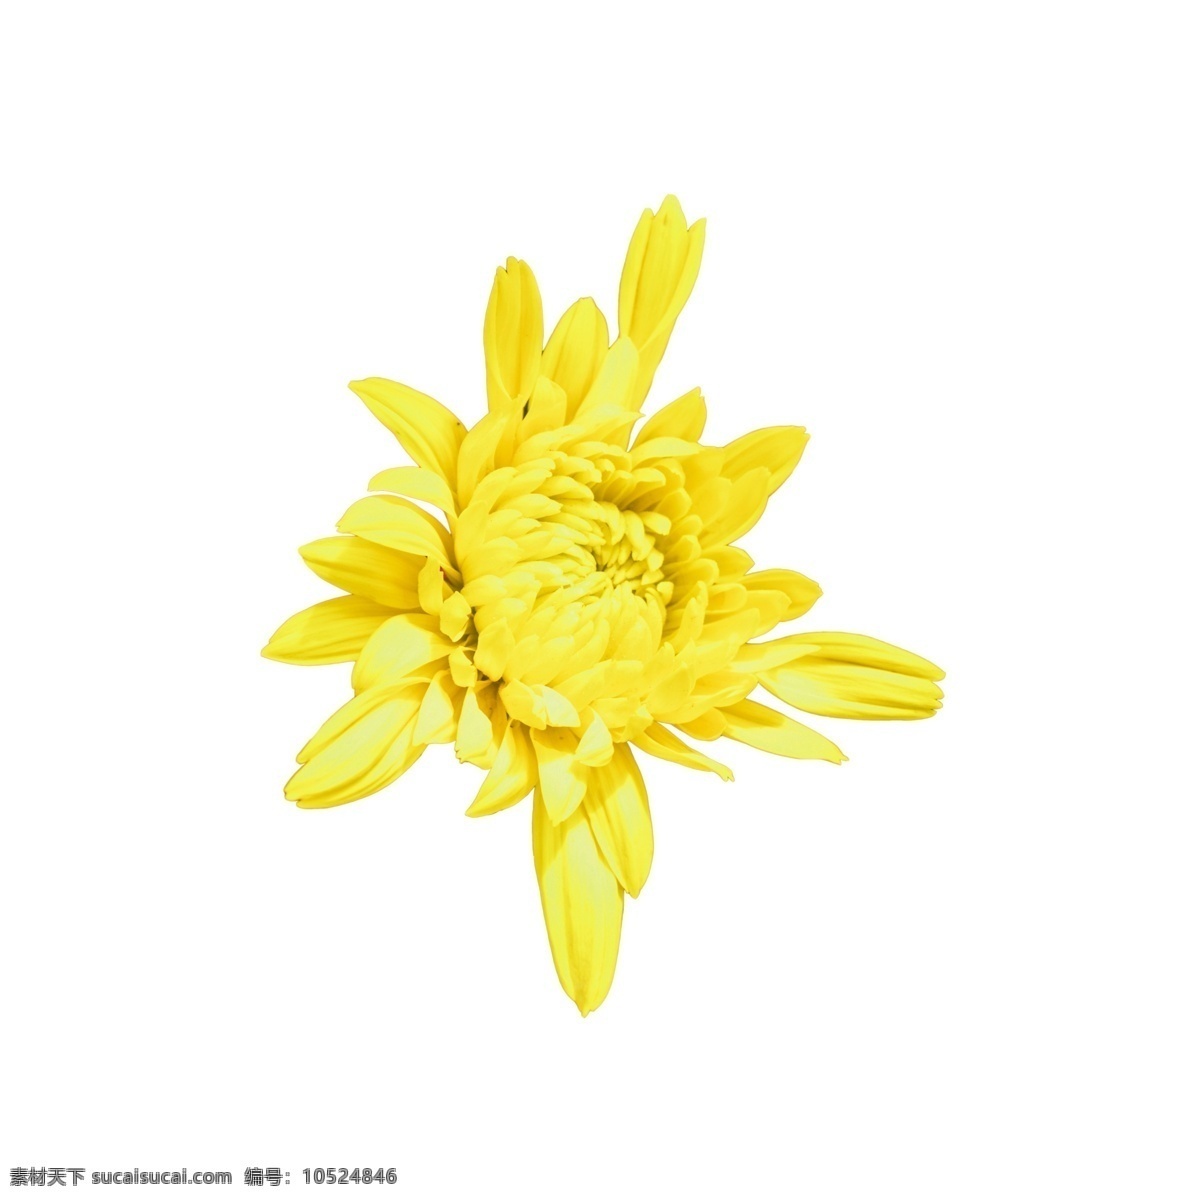 盛开 黄色 鲜花 黄色花朵 美丽鲜花 春天鲜花 卡通插图 创意卡通下载 插图 png图下载